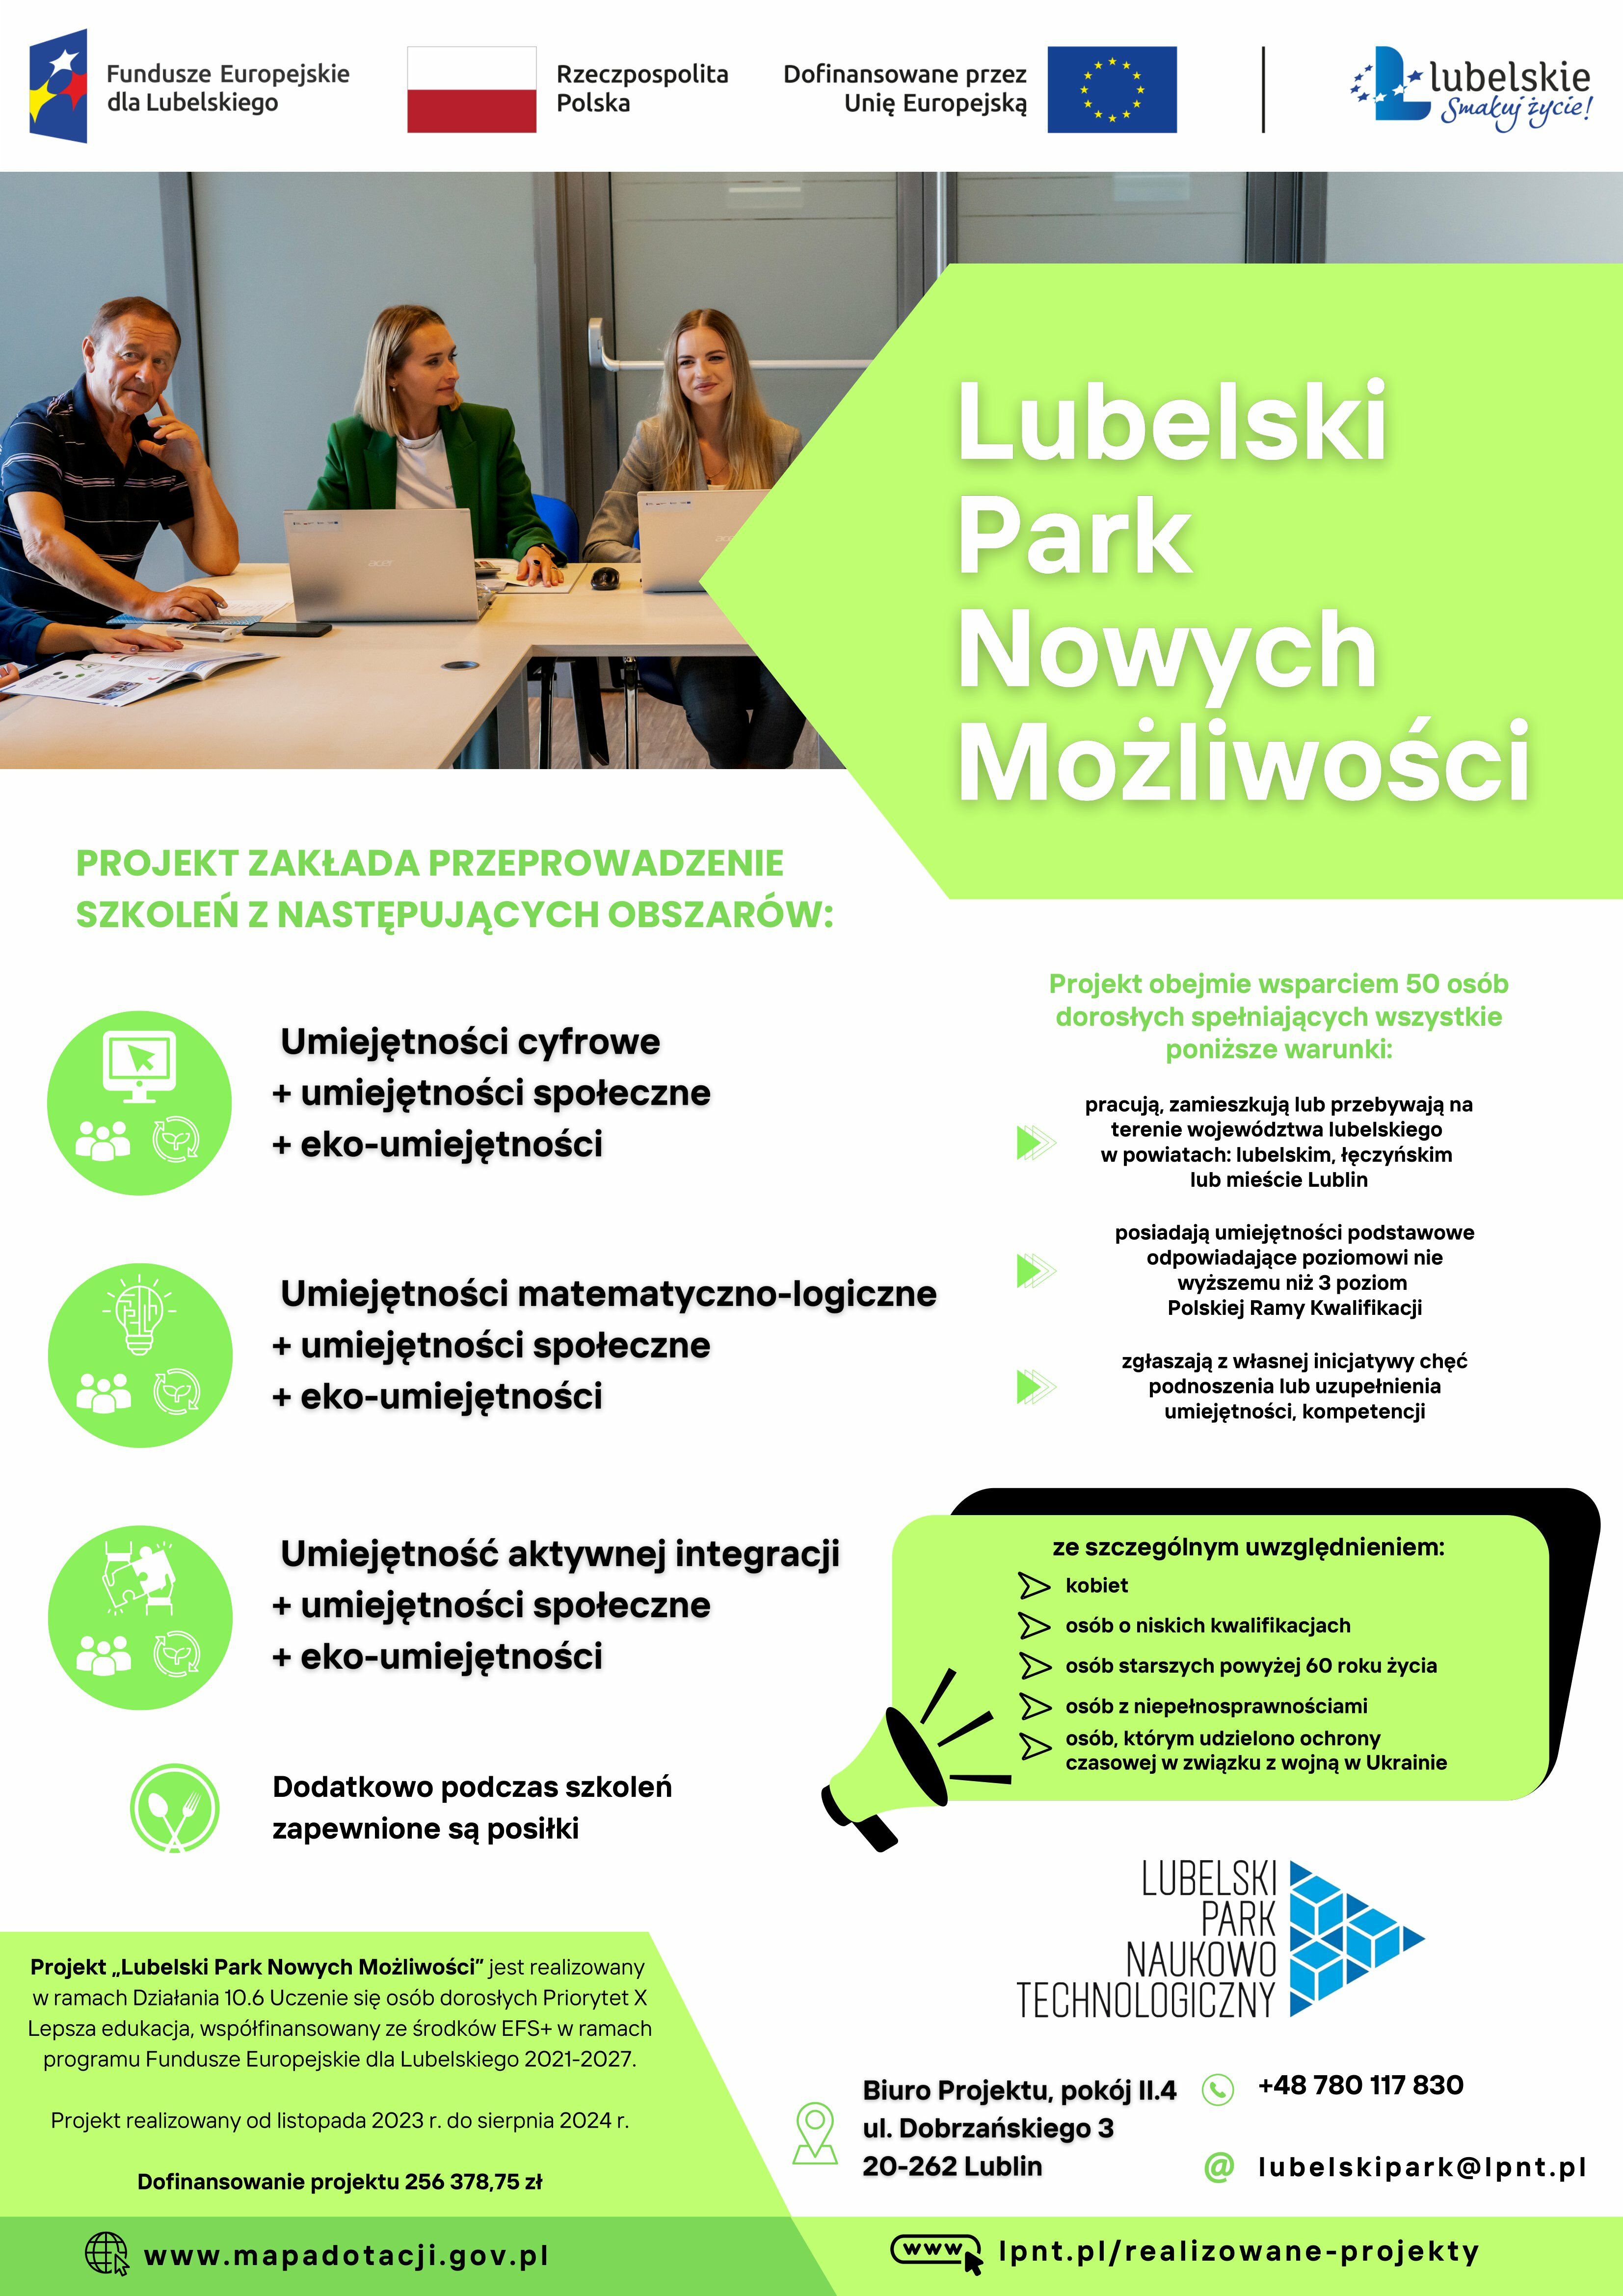 Opis 1: Plakat promujący projekt edukacyjny "Lubelski Park Nowoczesności", z grafiką symbolizującą naukę i rozwój, oraz logotypami funduszy europejskich, z informacjami kontaktowymi.